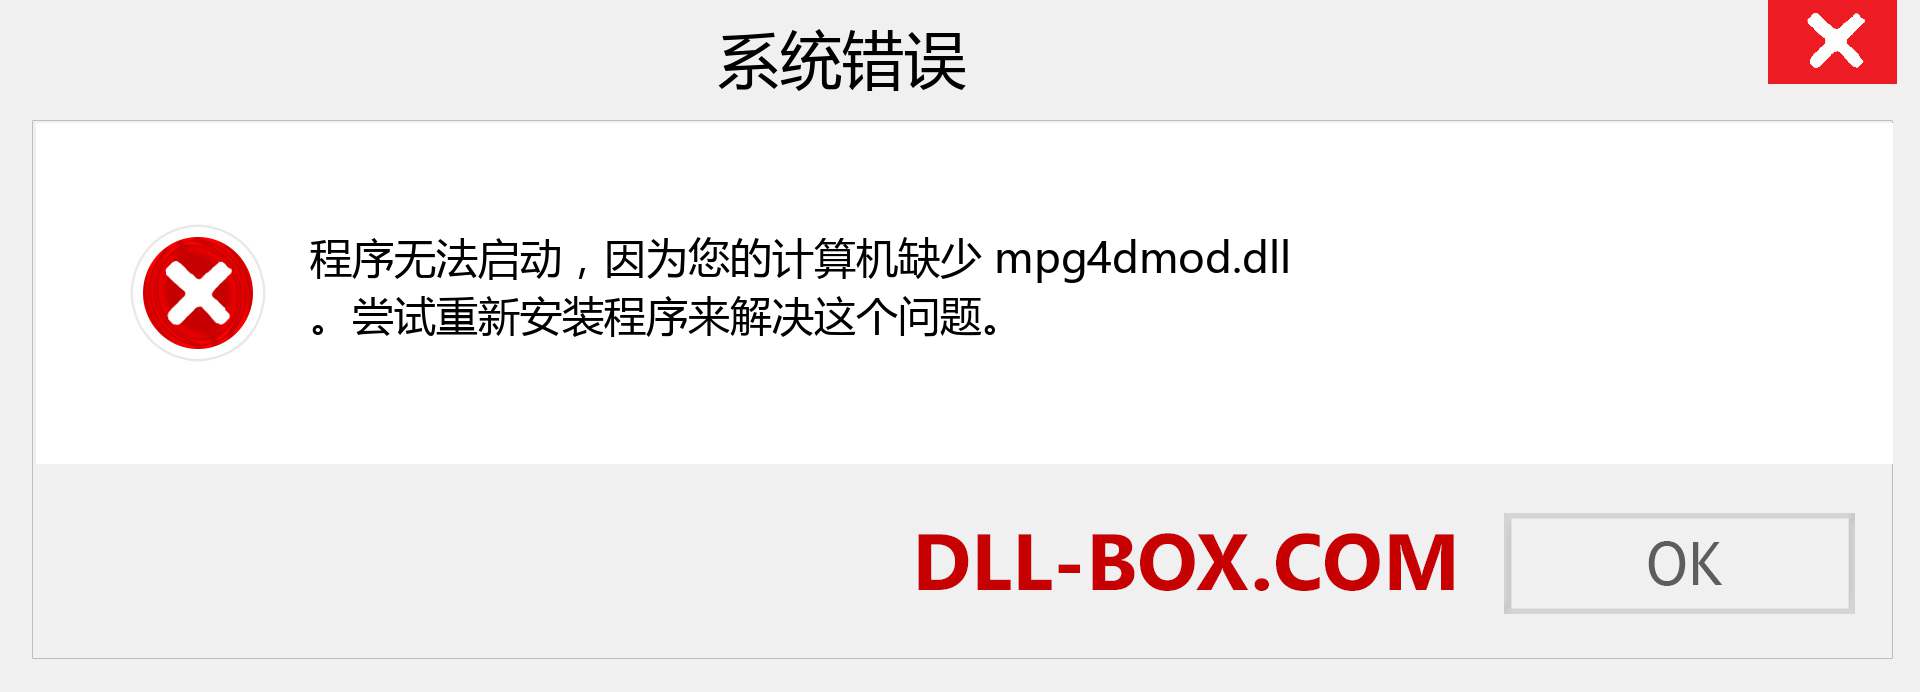 mpg4dmod.dll 文件丢失？。 适用于 Windows 7、8、10 的下载 - 修复 Windows、照片、图像上的 mpg4dmod dll 丢失错误